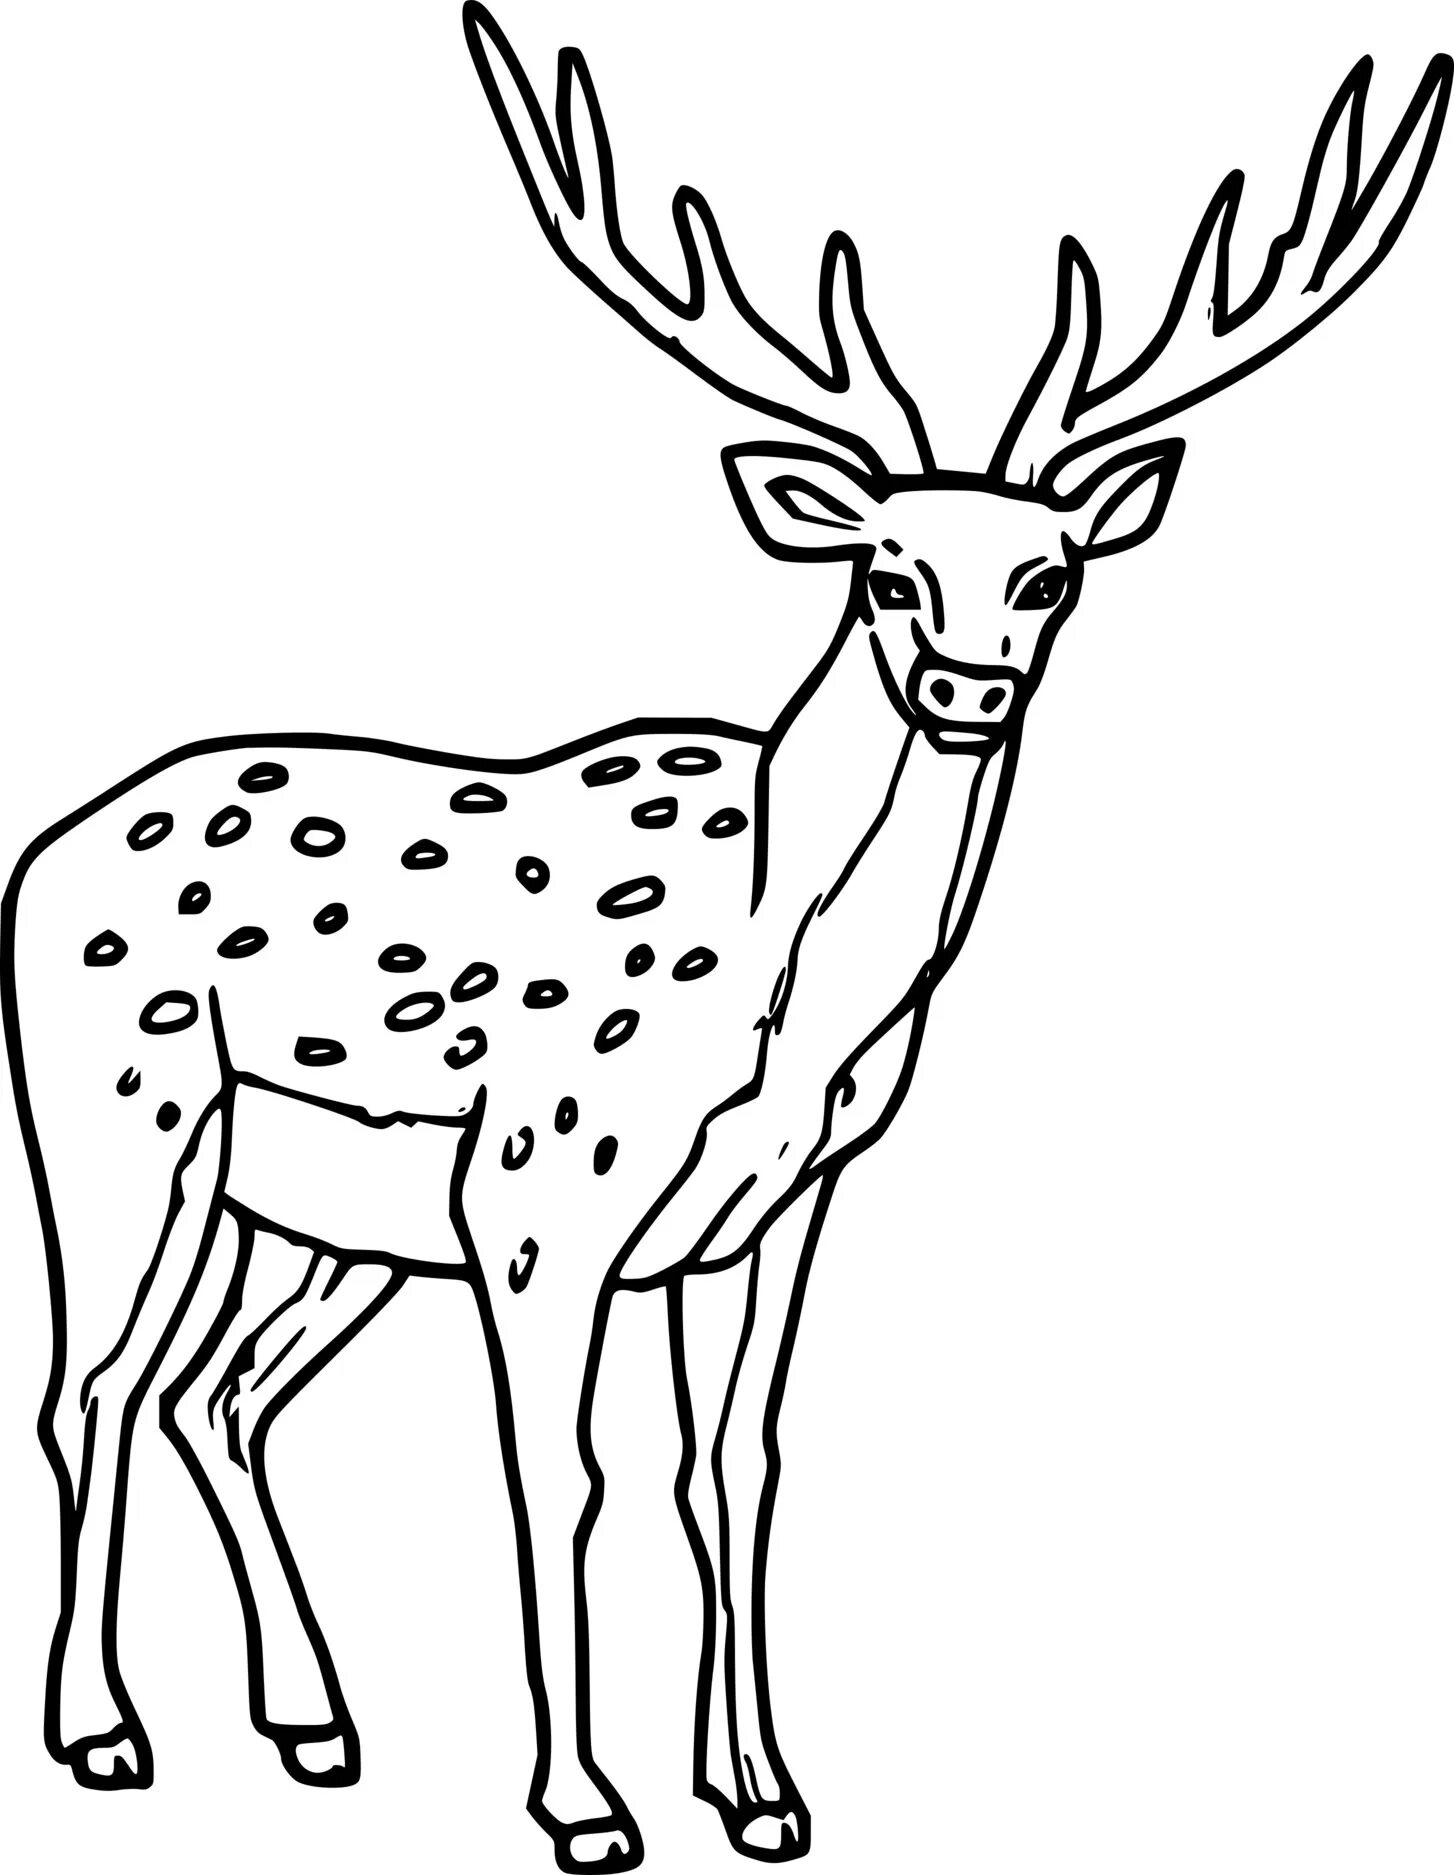 Sika deer #2